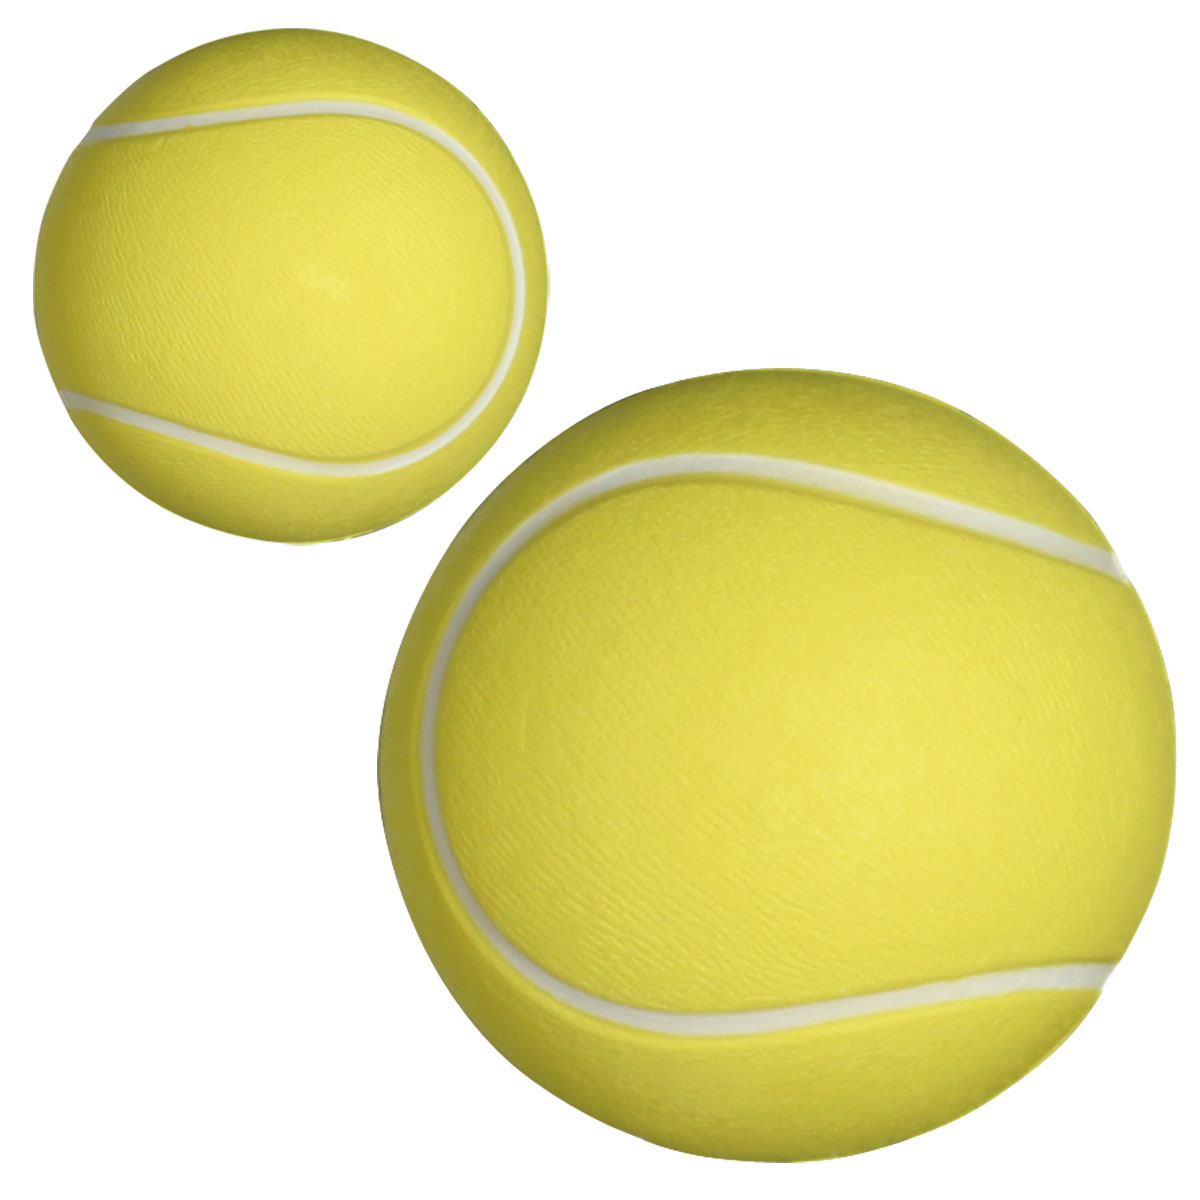 Yellow Tennis Ball Stress Ball